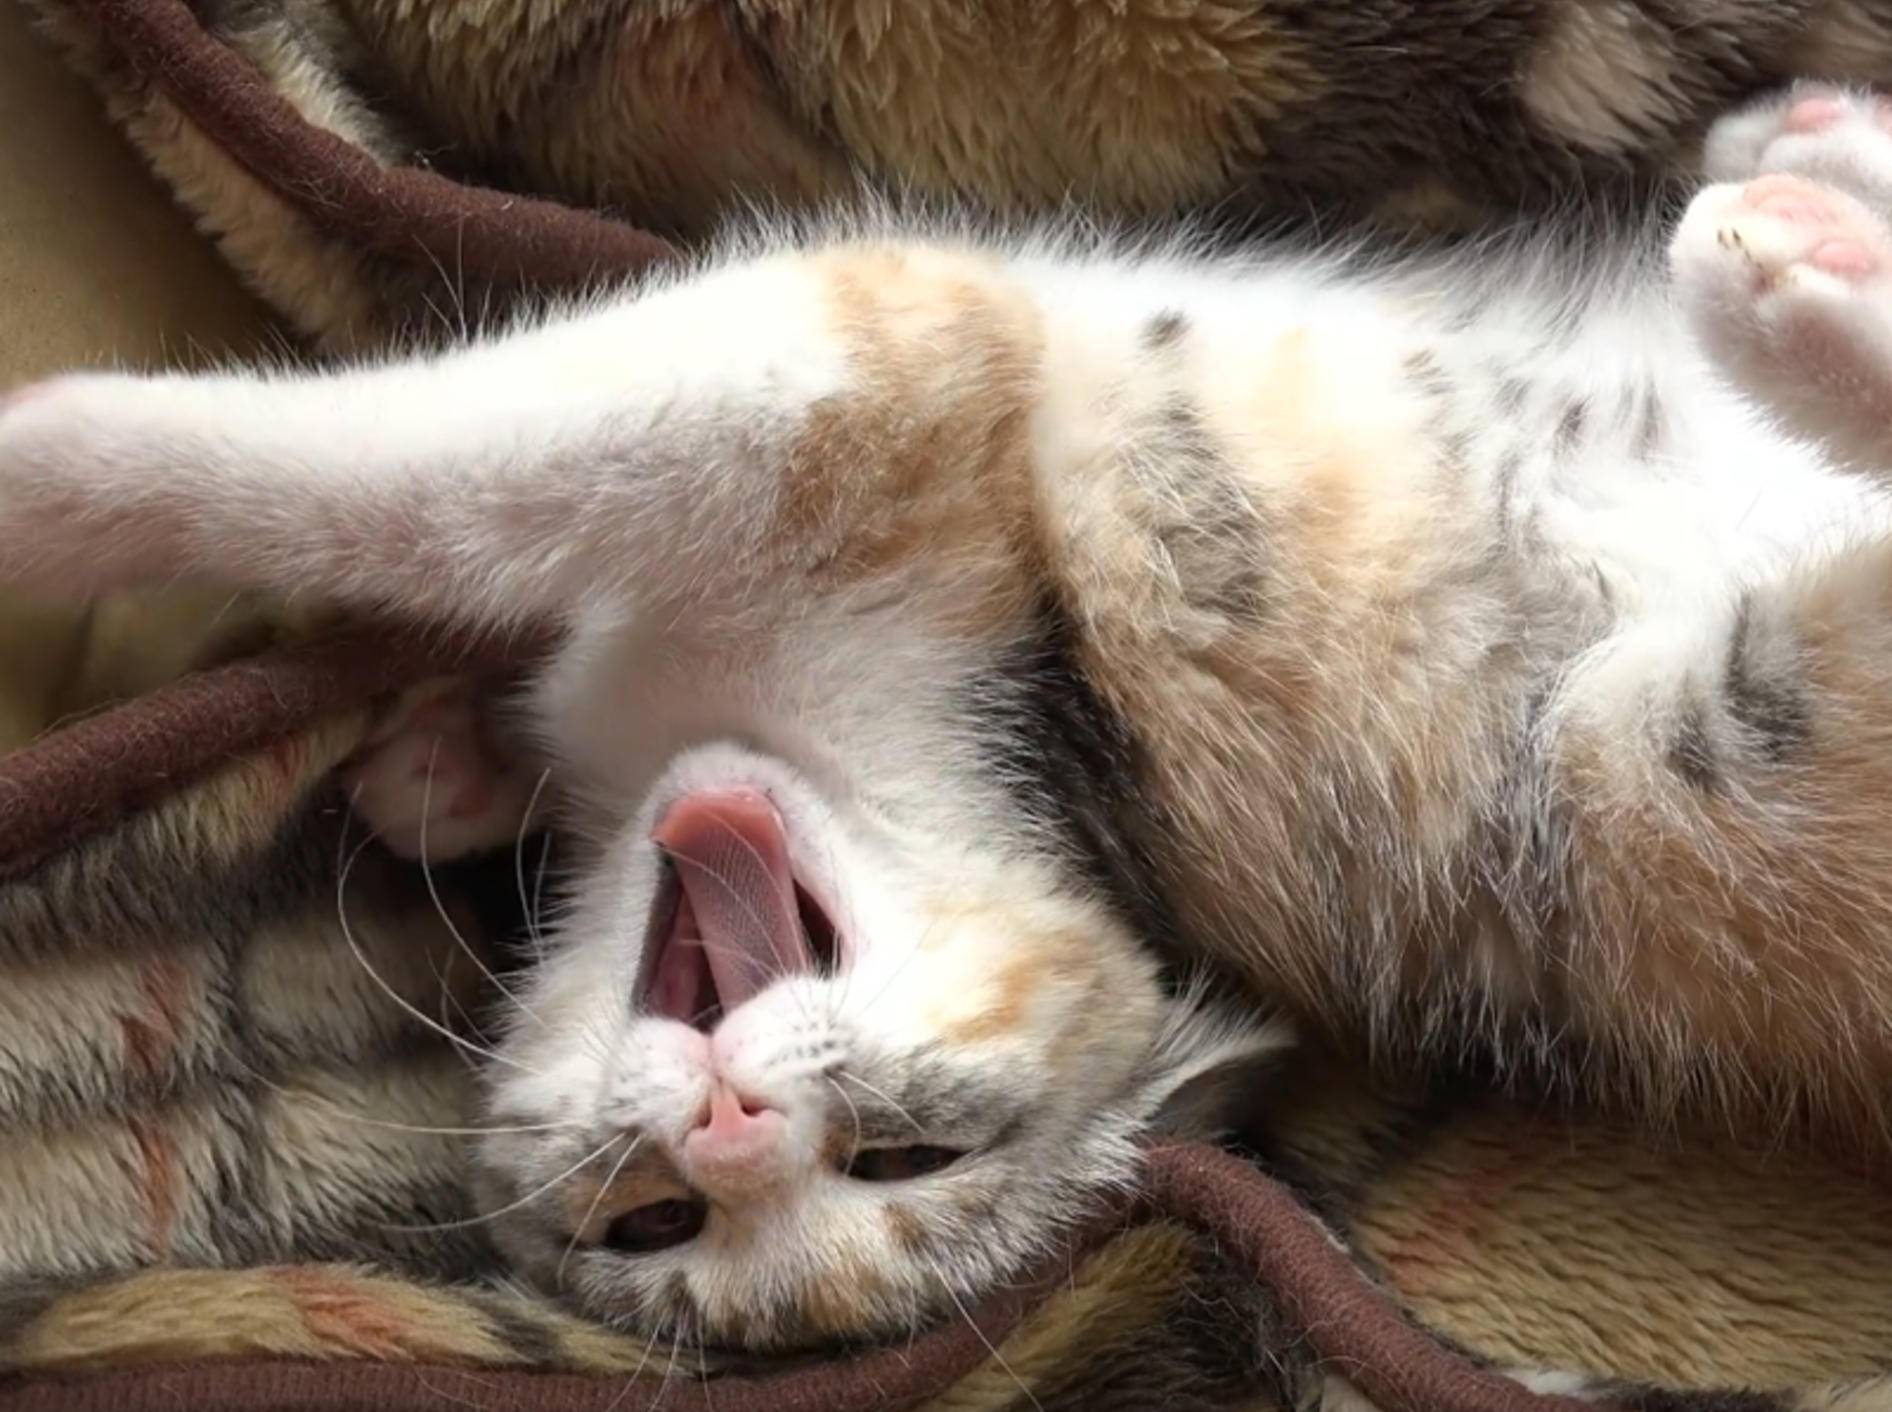 Kleines Glückskätzchen schläft und döst friedlich – YouTube / 10 Cats.